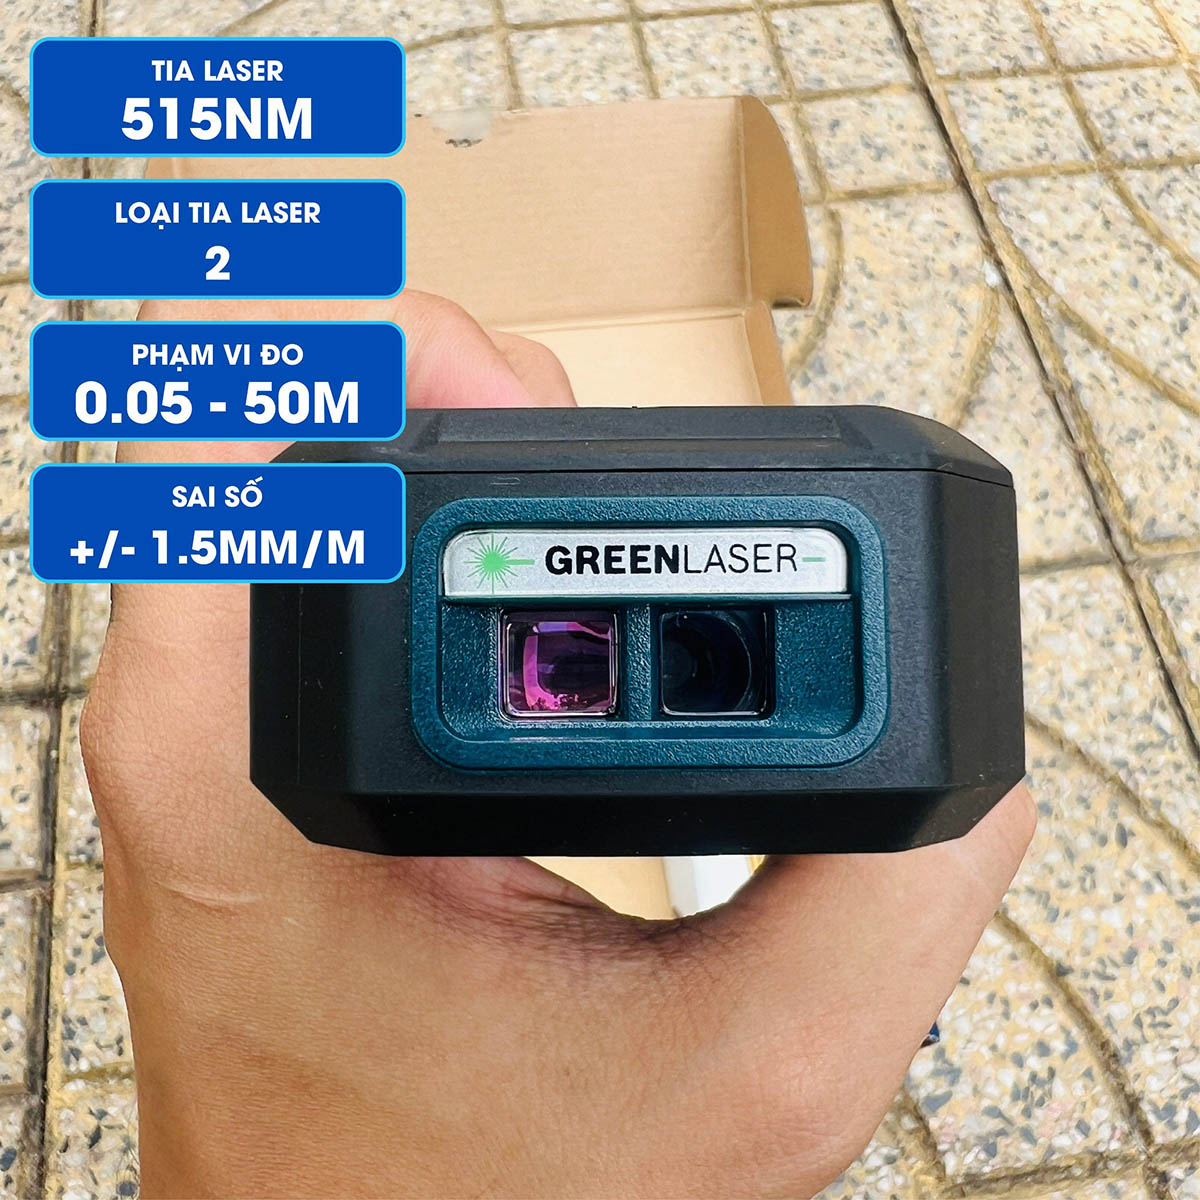 Máy đo khoảng cách Laser tia Xanh Bosch GLM 50-27 CG